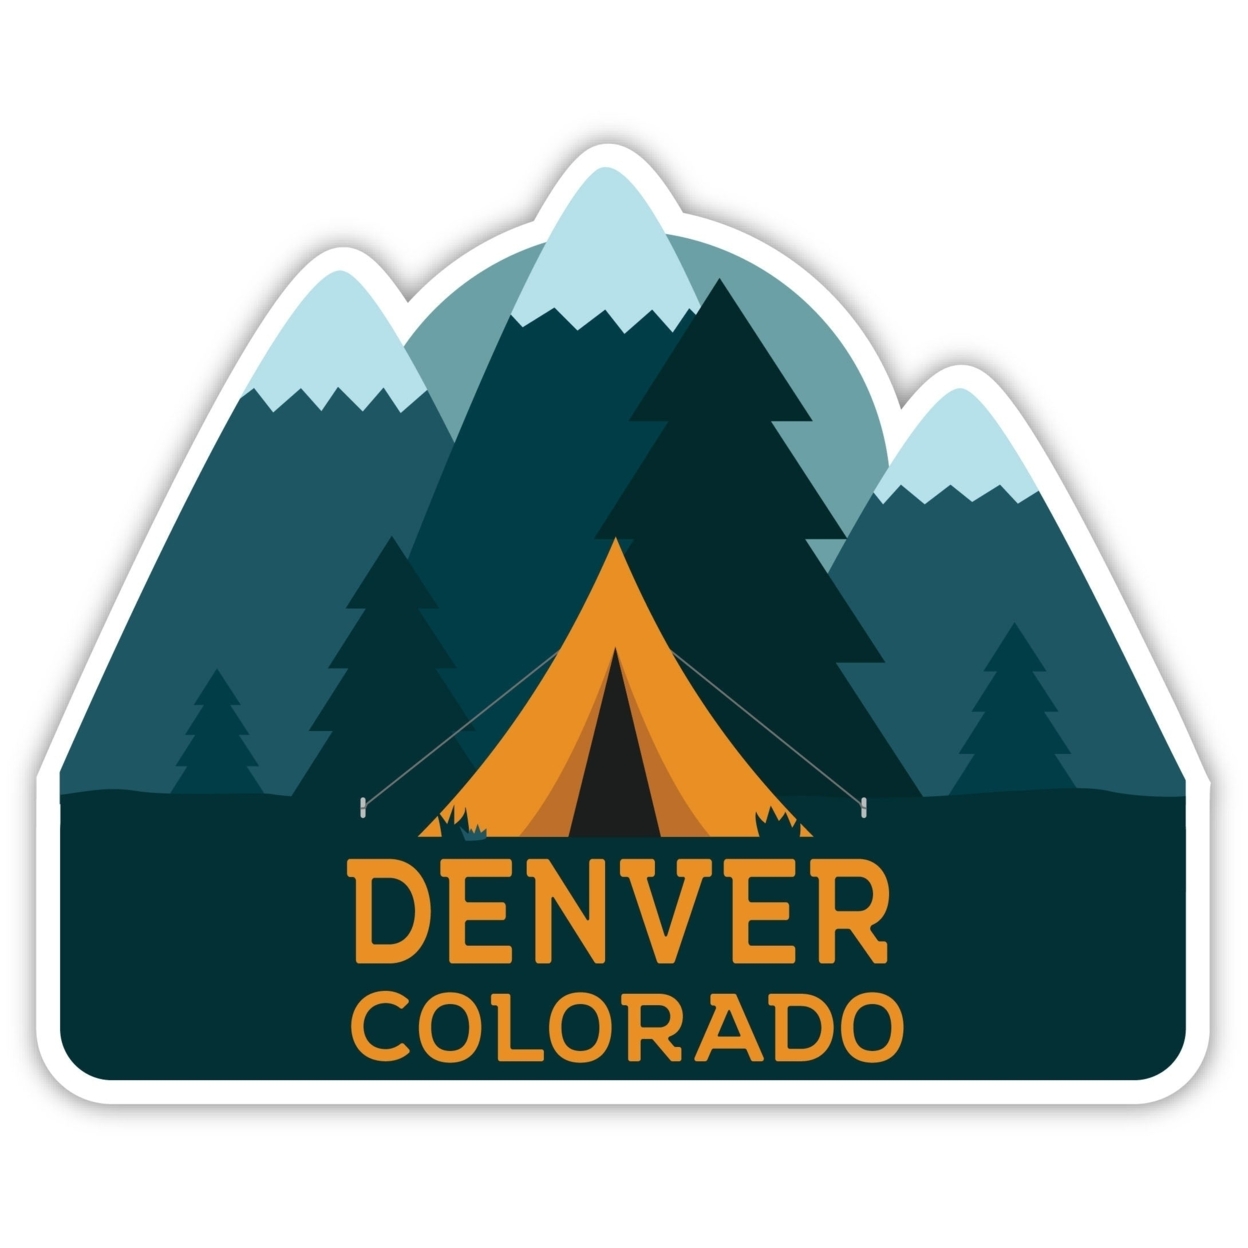 Denver Colorado Souvenir Decorative Stickers (Choose Theme And Size) - Single Unit, 2-Inch, Tent